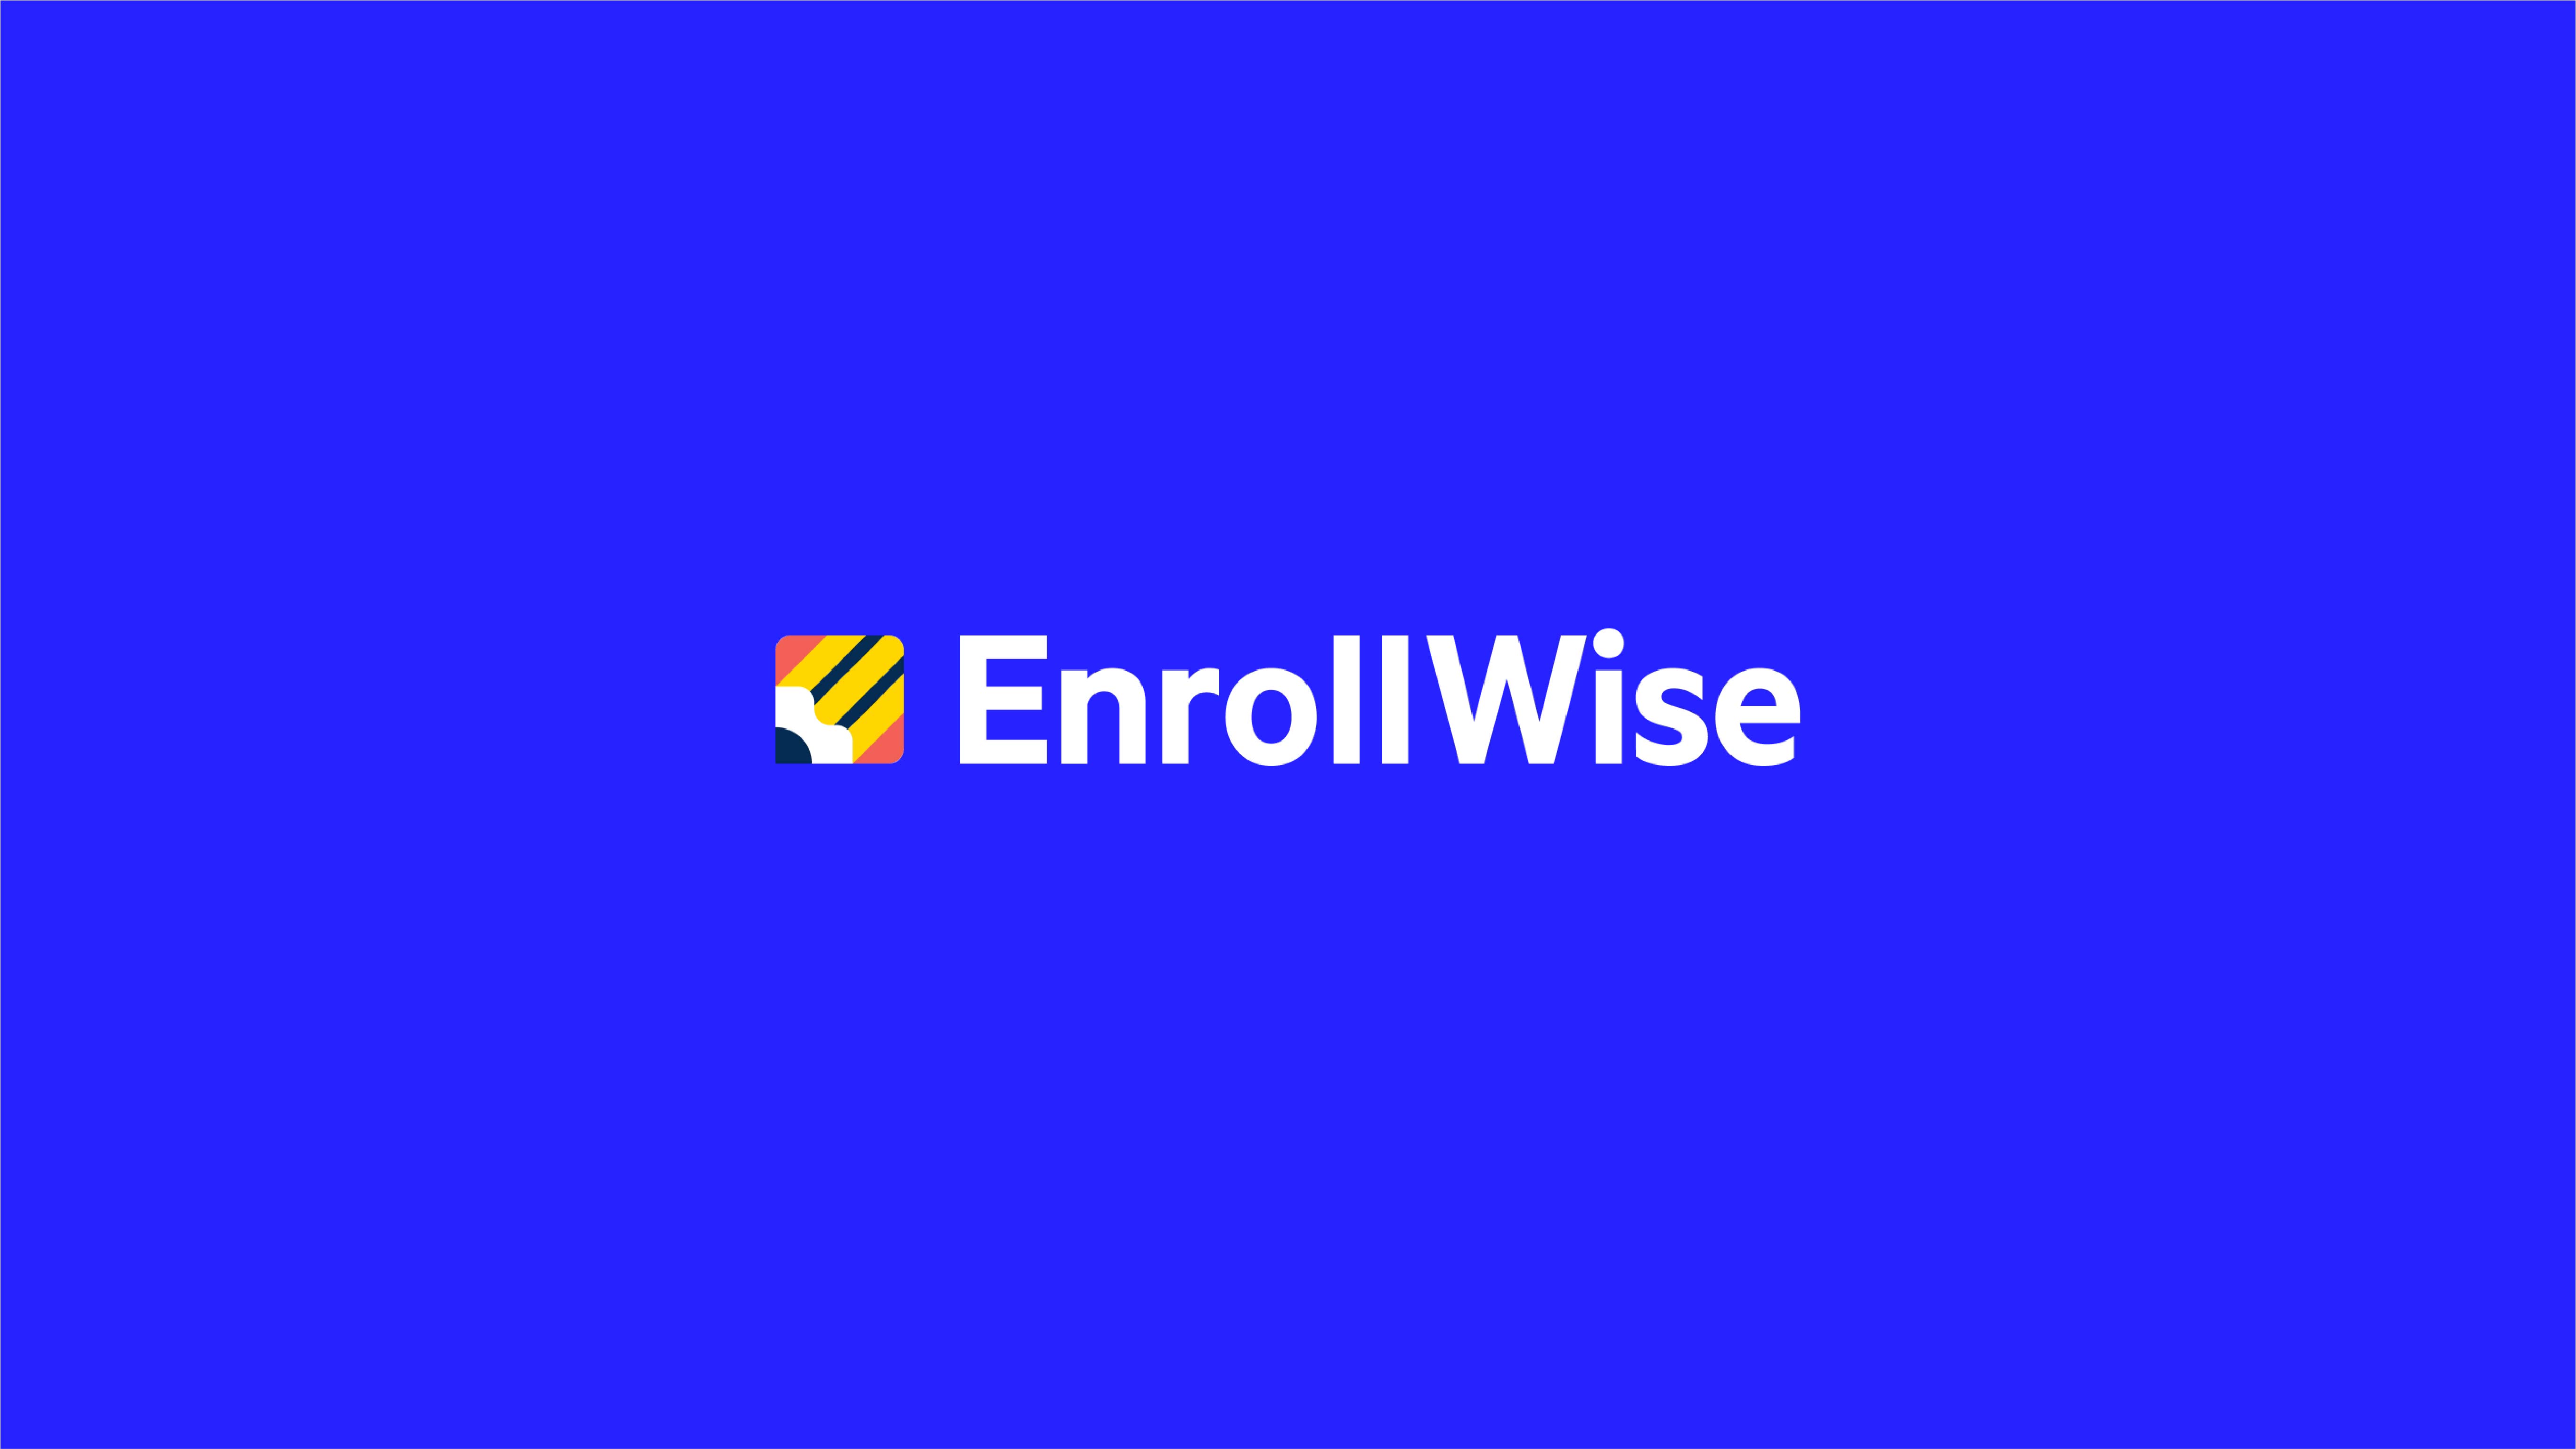 Enrollwise logo